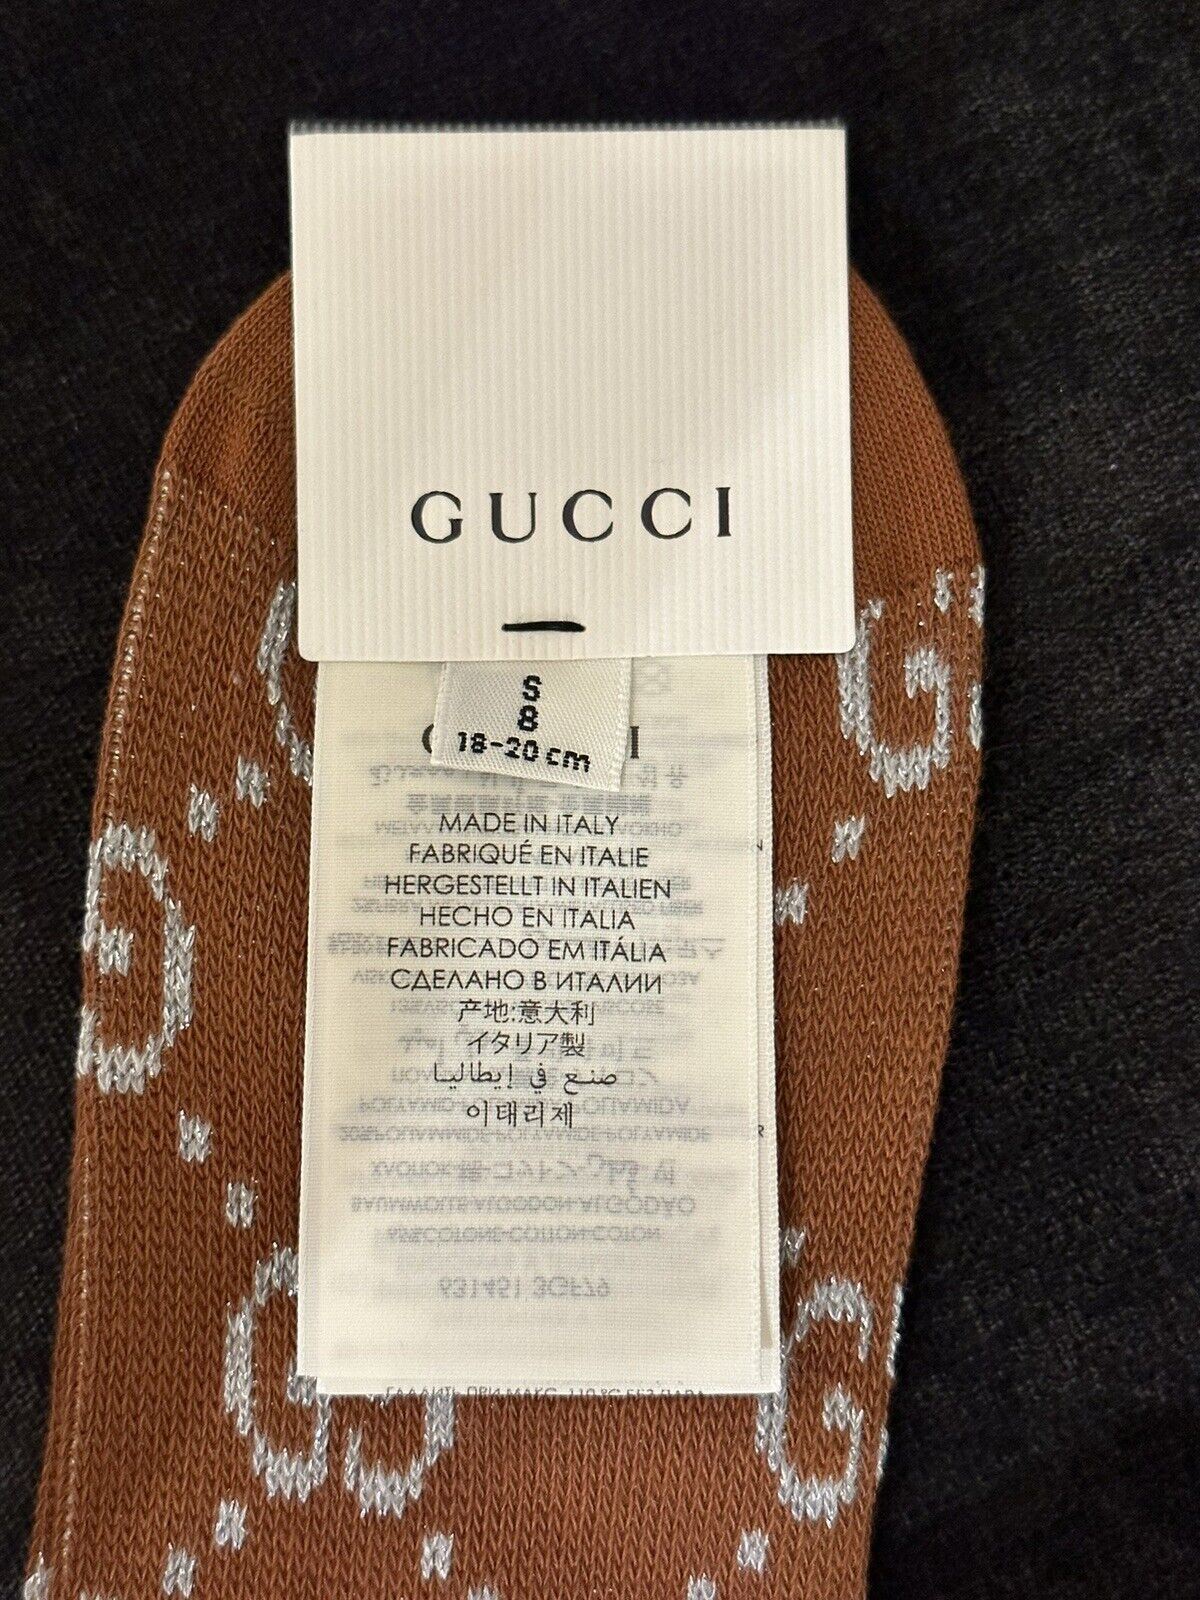 Носки NWT Gucci Mini в греческом стиле GG, серебристо-коричневые, маленькие (размер 8) 631451 